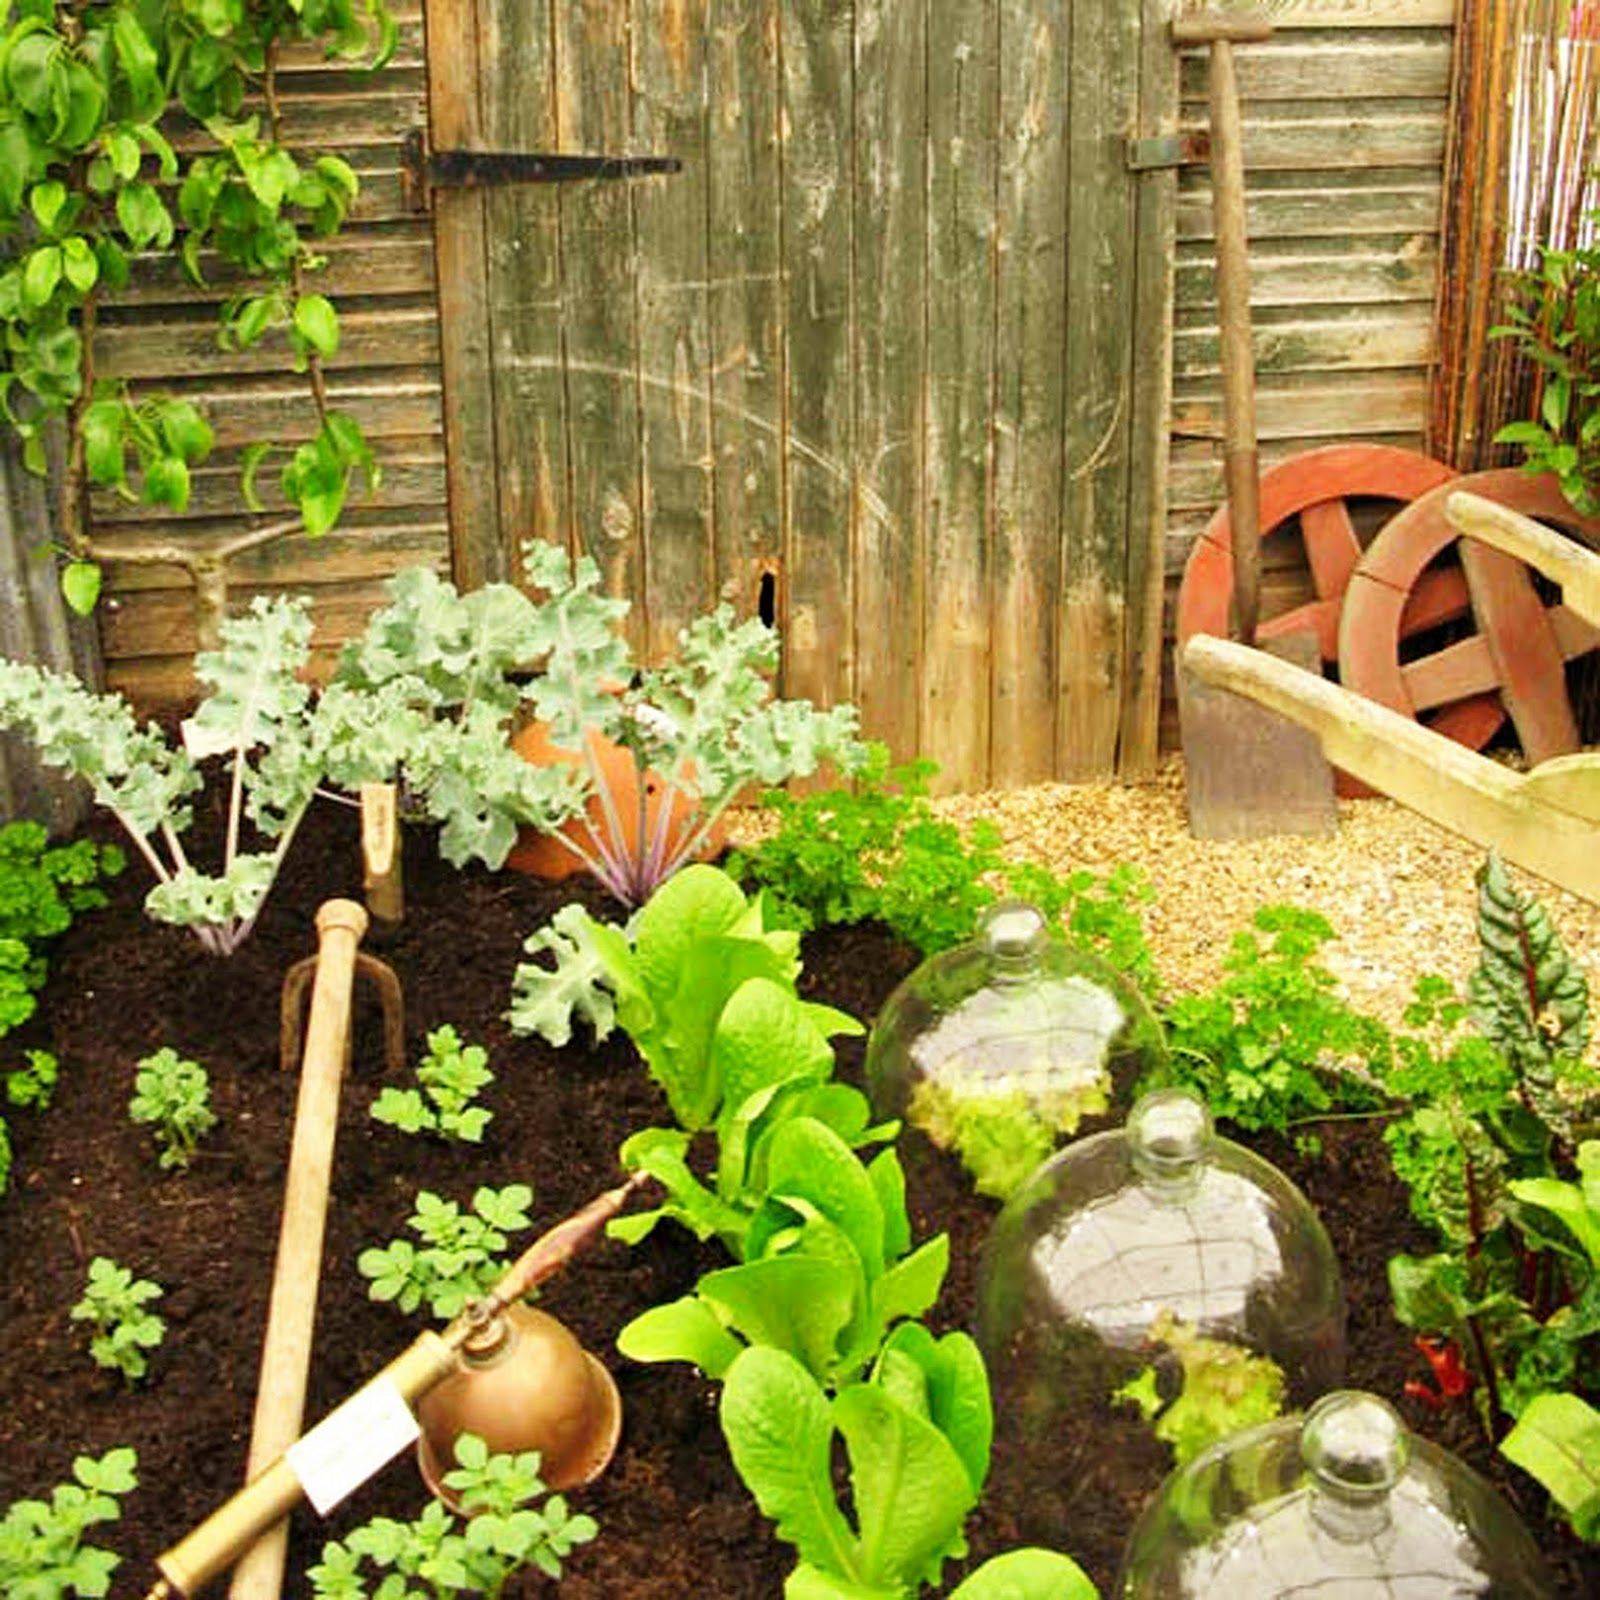 Inspiring Small Vegetable Garden Ideas